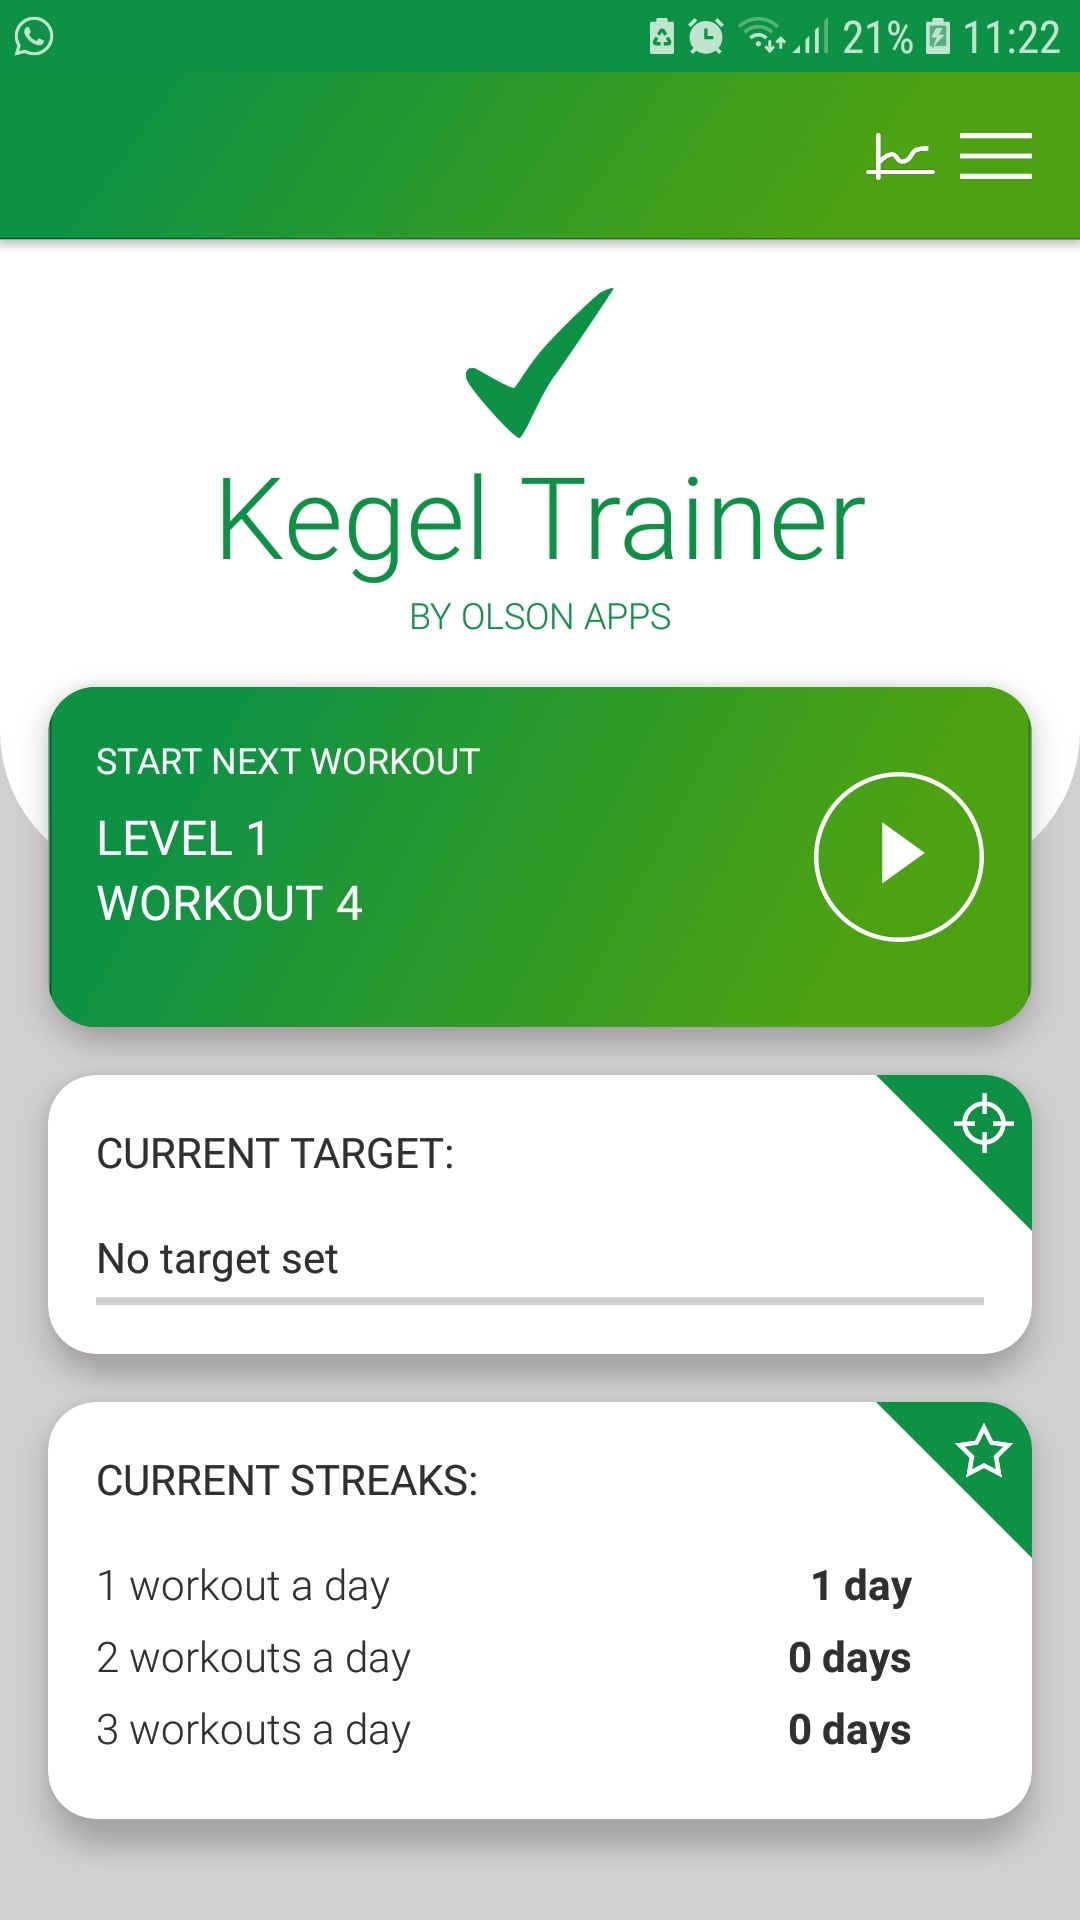 Kegel Trainer mobile prenatal exercise app